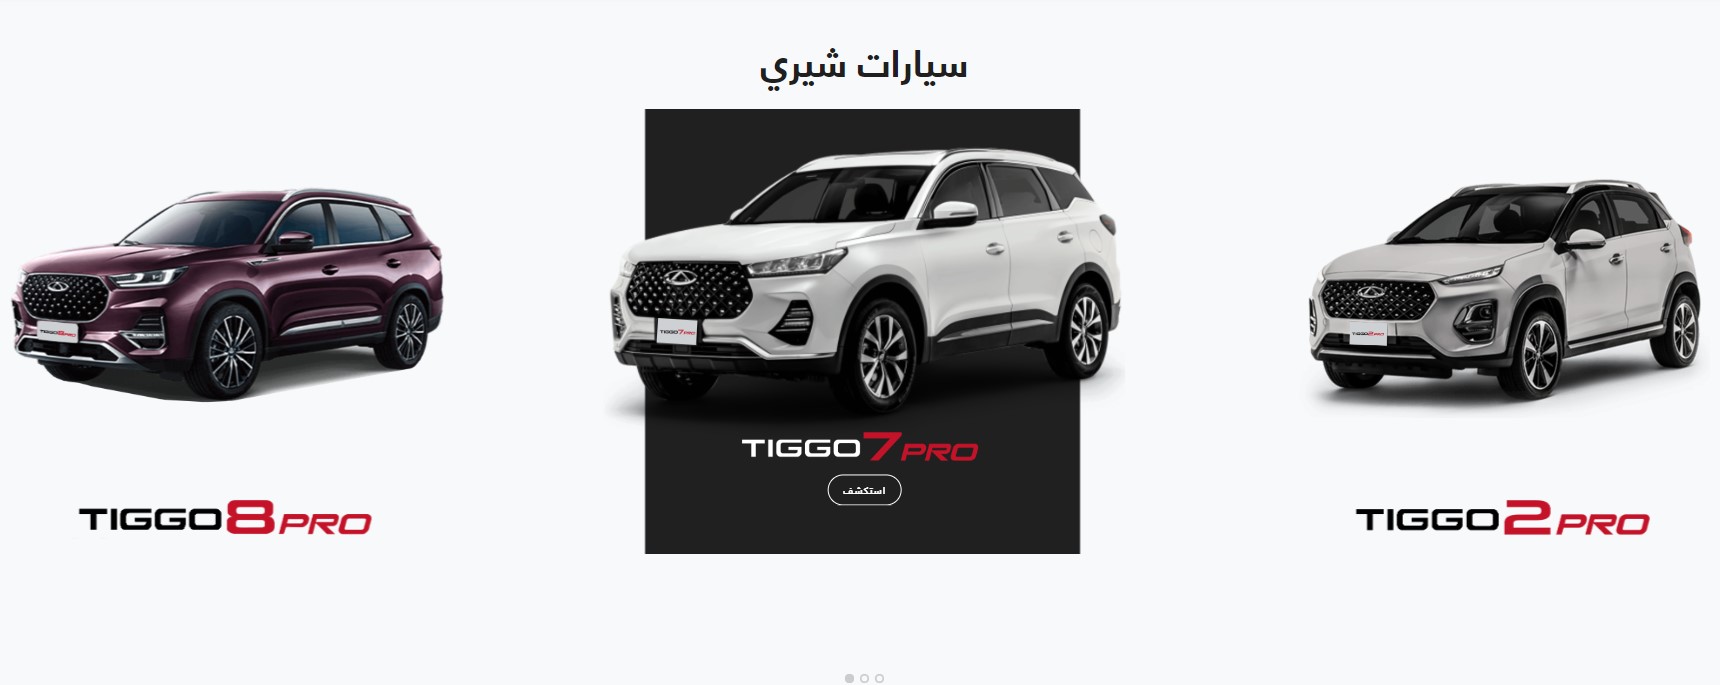 اسعار سيارات شيري تيجو 2024 في السعودية محدثة 2